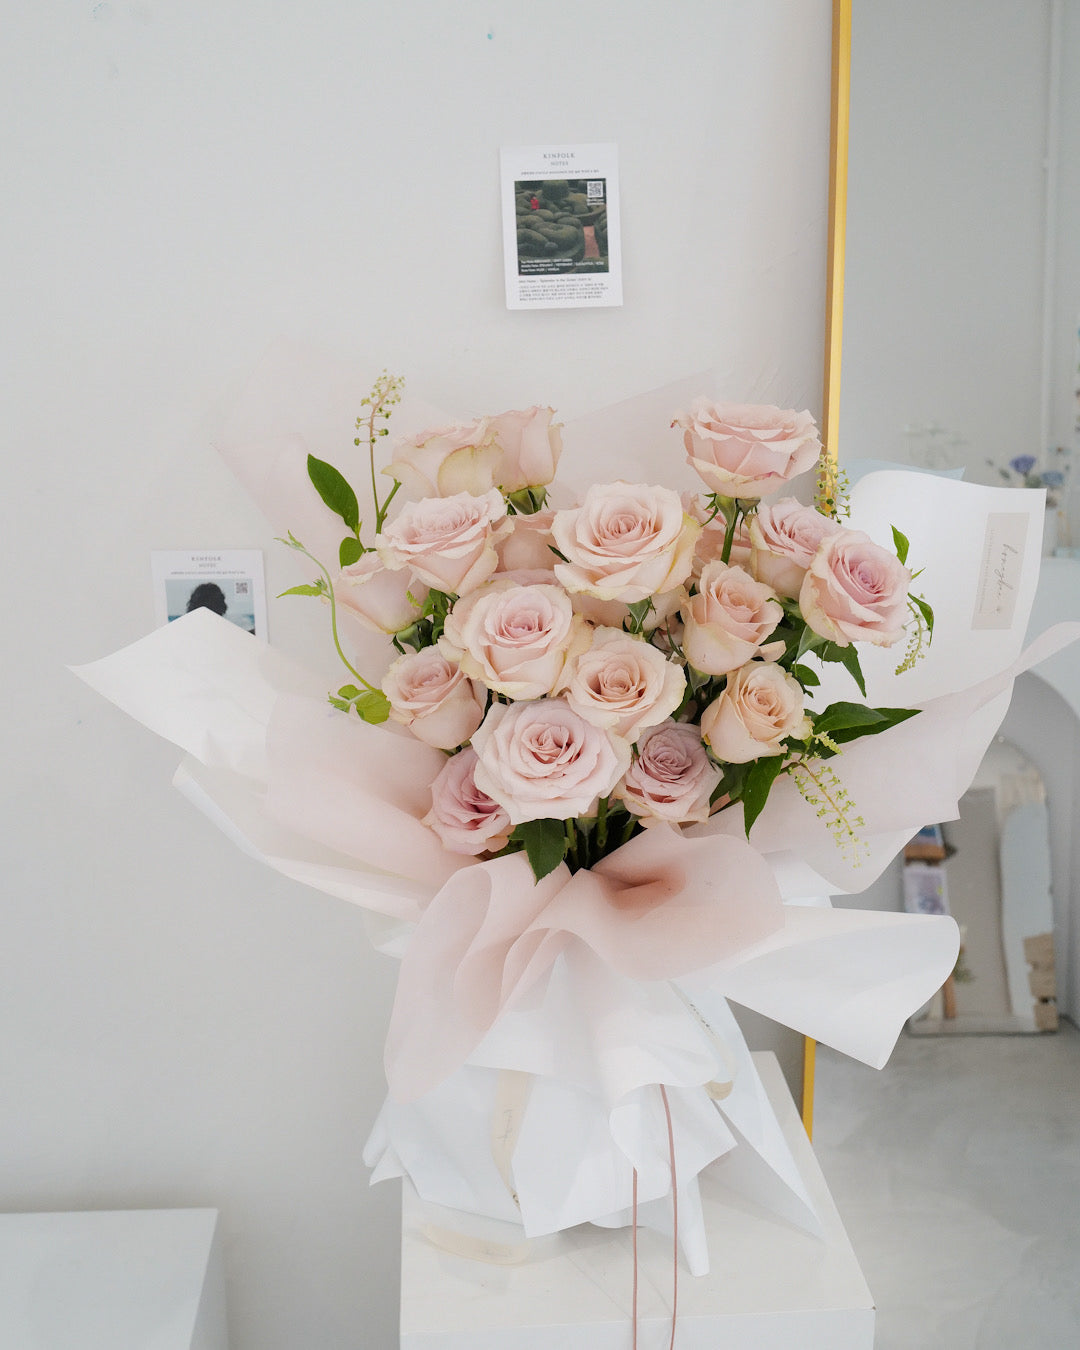 玫瑰花束 Rose Bouquet